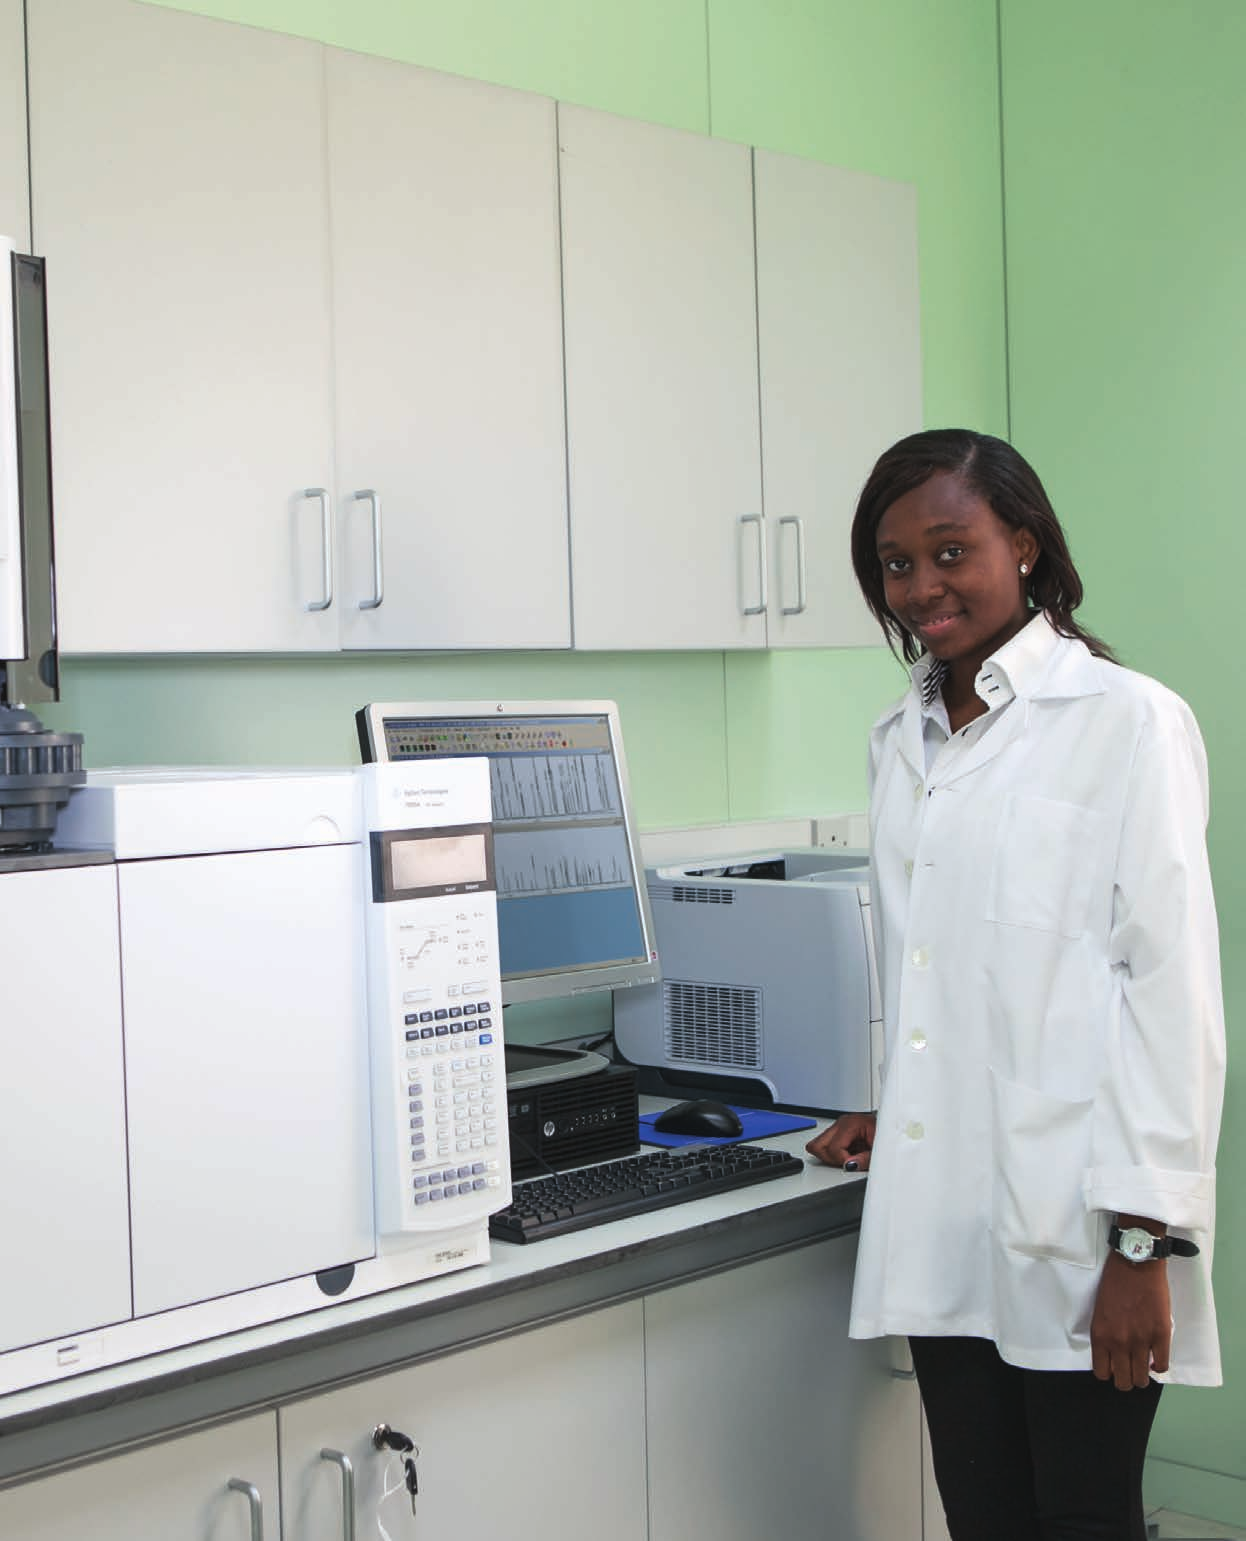 DAÜ Eczacılık Fakültesi yoğun laboratuvar uygulamaları ile üst düzey bilim insanları yetiştiriyor.